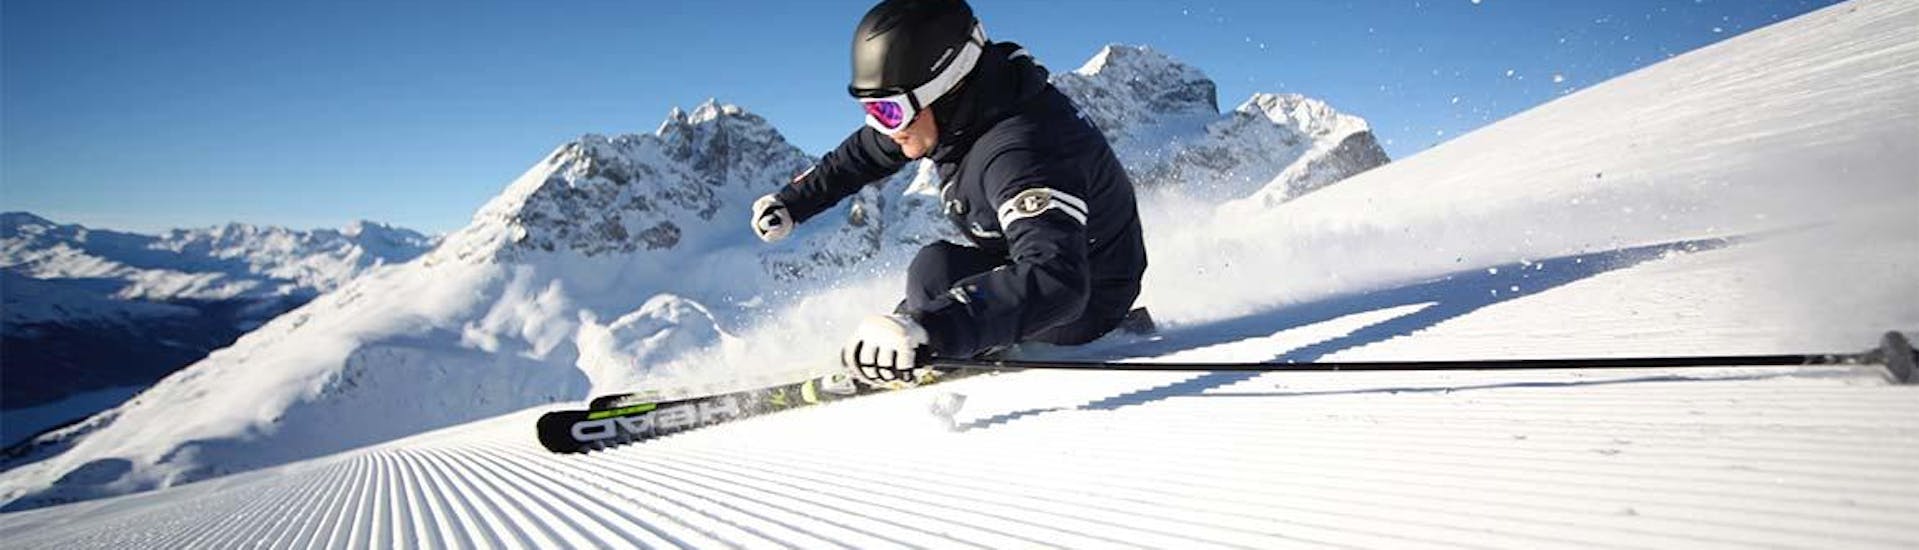 Cours particulier de ski Adultes pour Tous niveaux - Journée avec Skischule PassionSki - St. Moritz - Hero image